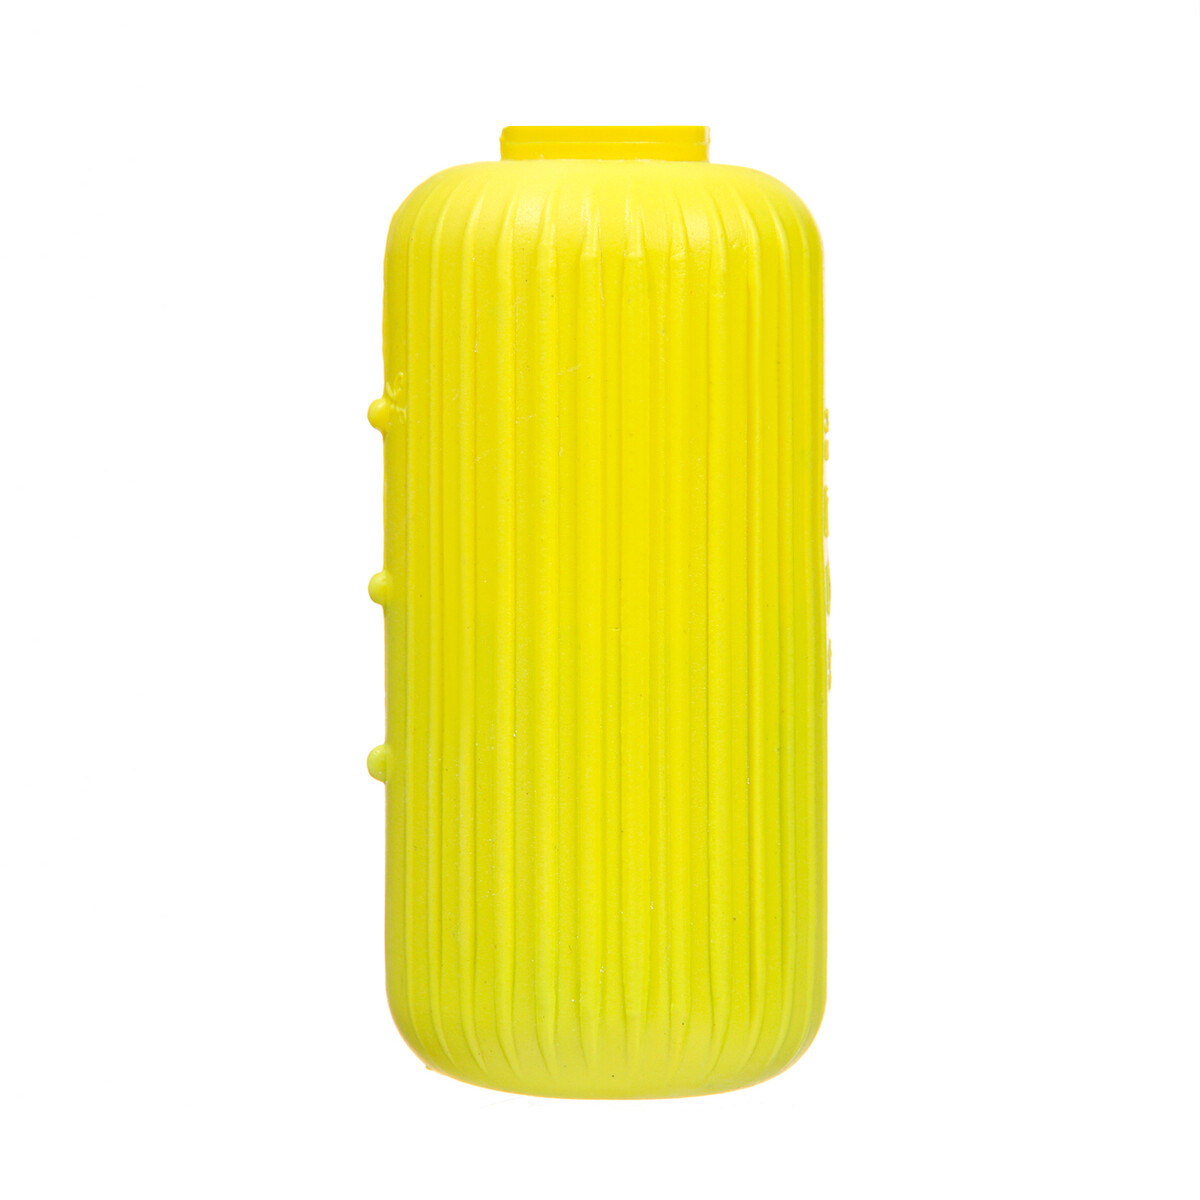 Очиститель для унитаза, лимон 110 г гелевый освежитель для унитаза с дозатором лимон 60 гр